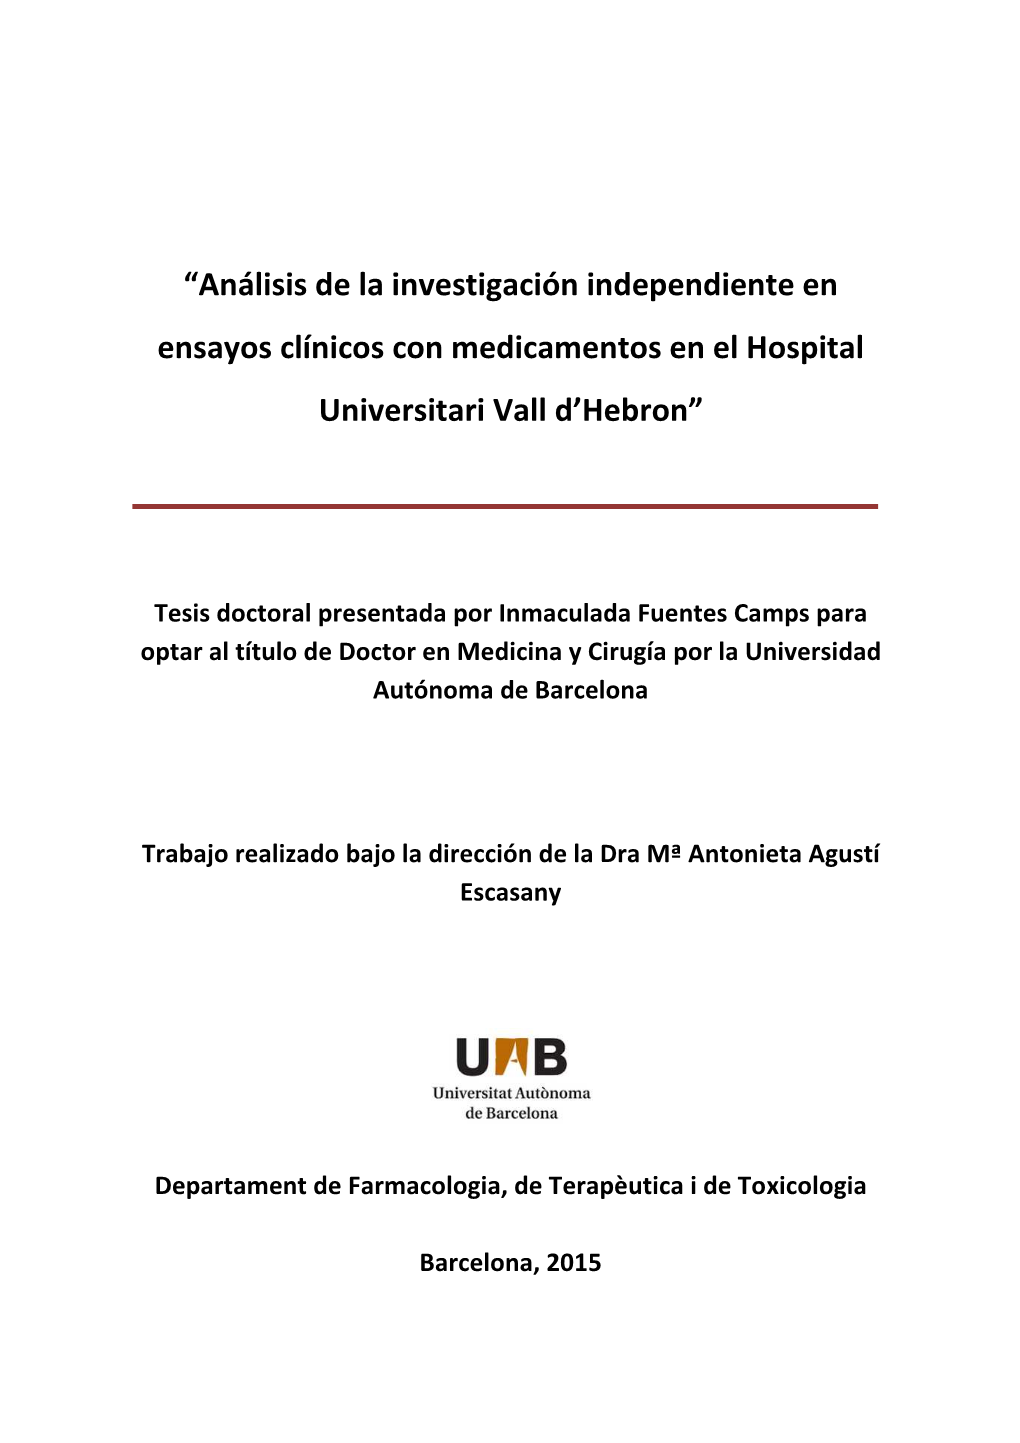 “Análisis De La Investigación Independiente En Ensayos Clínicos Con Medicamentos En El Hospital Universitari Vall D'hebro